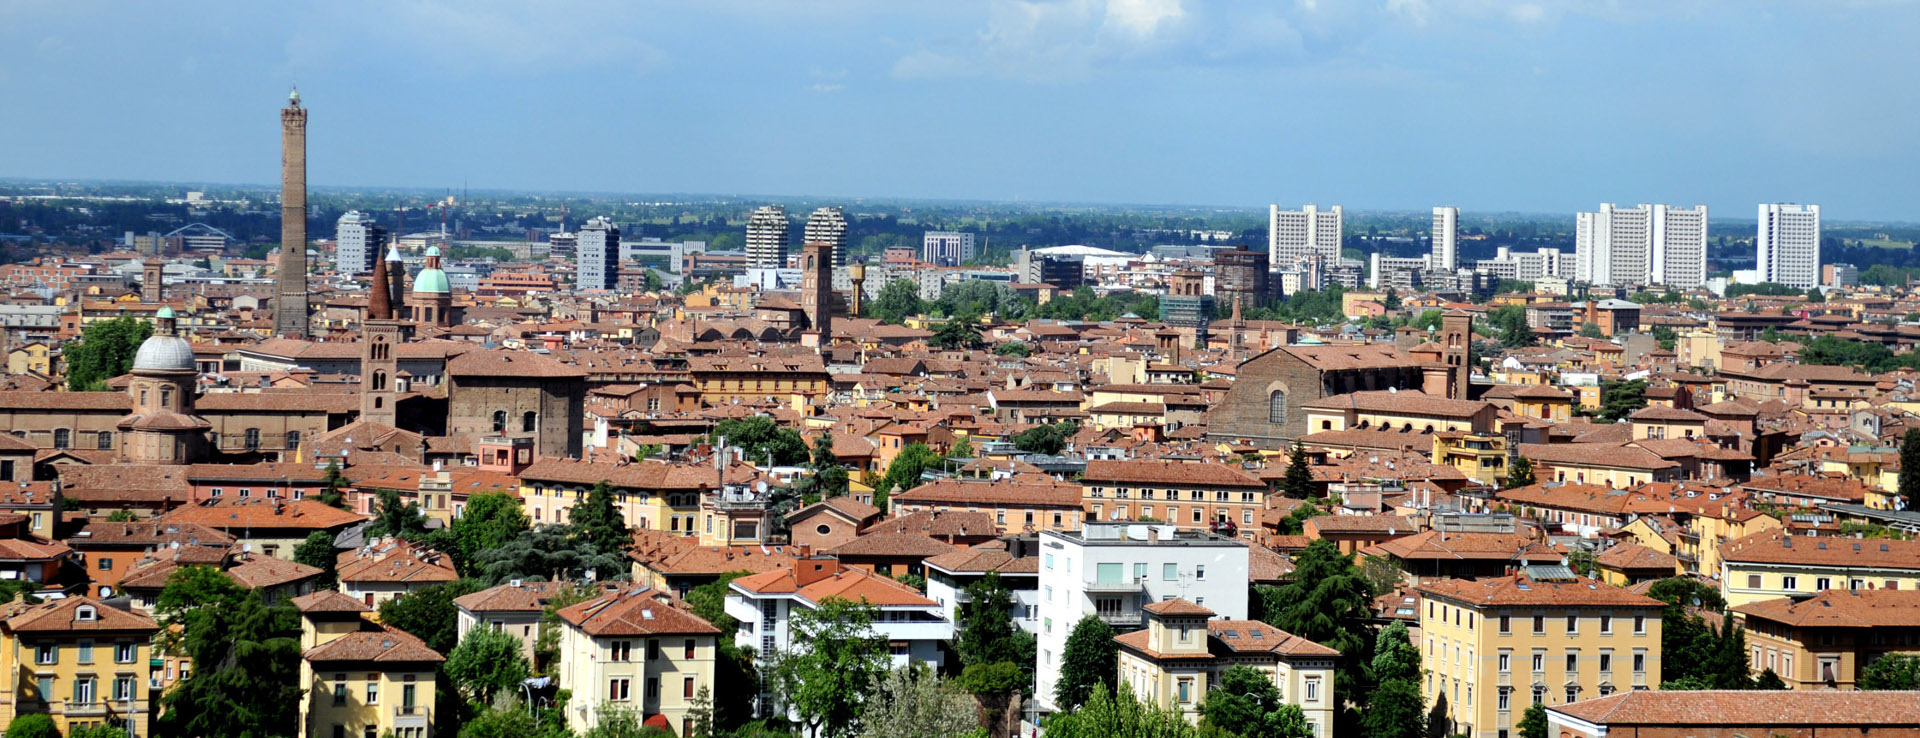 Immagine di Bologna dall'alto